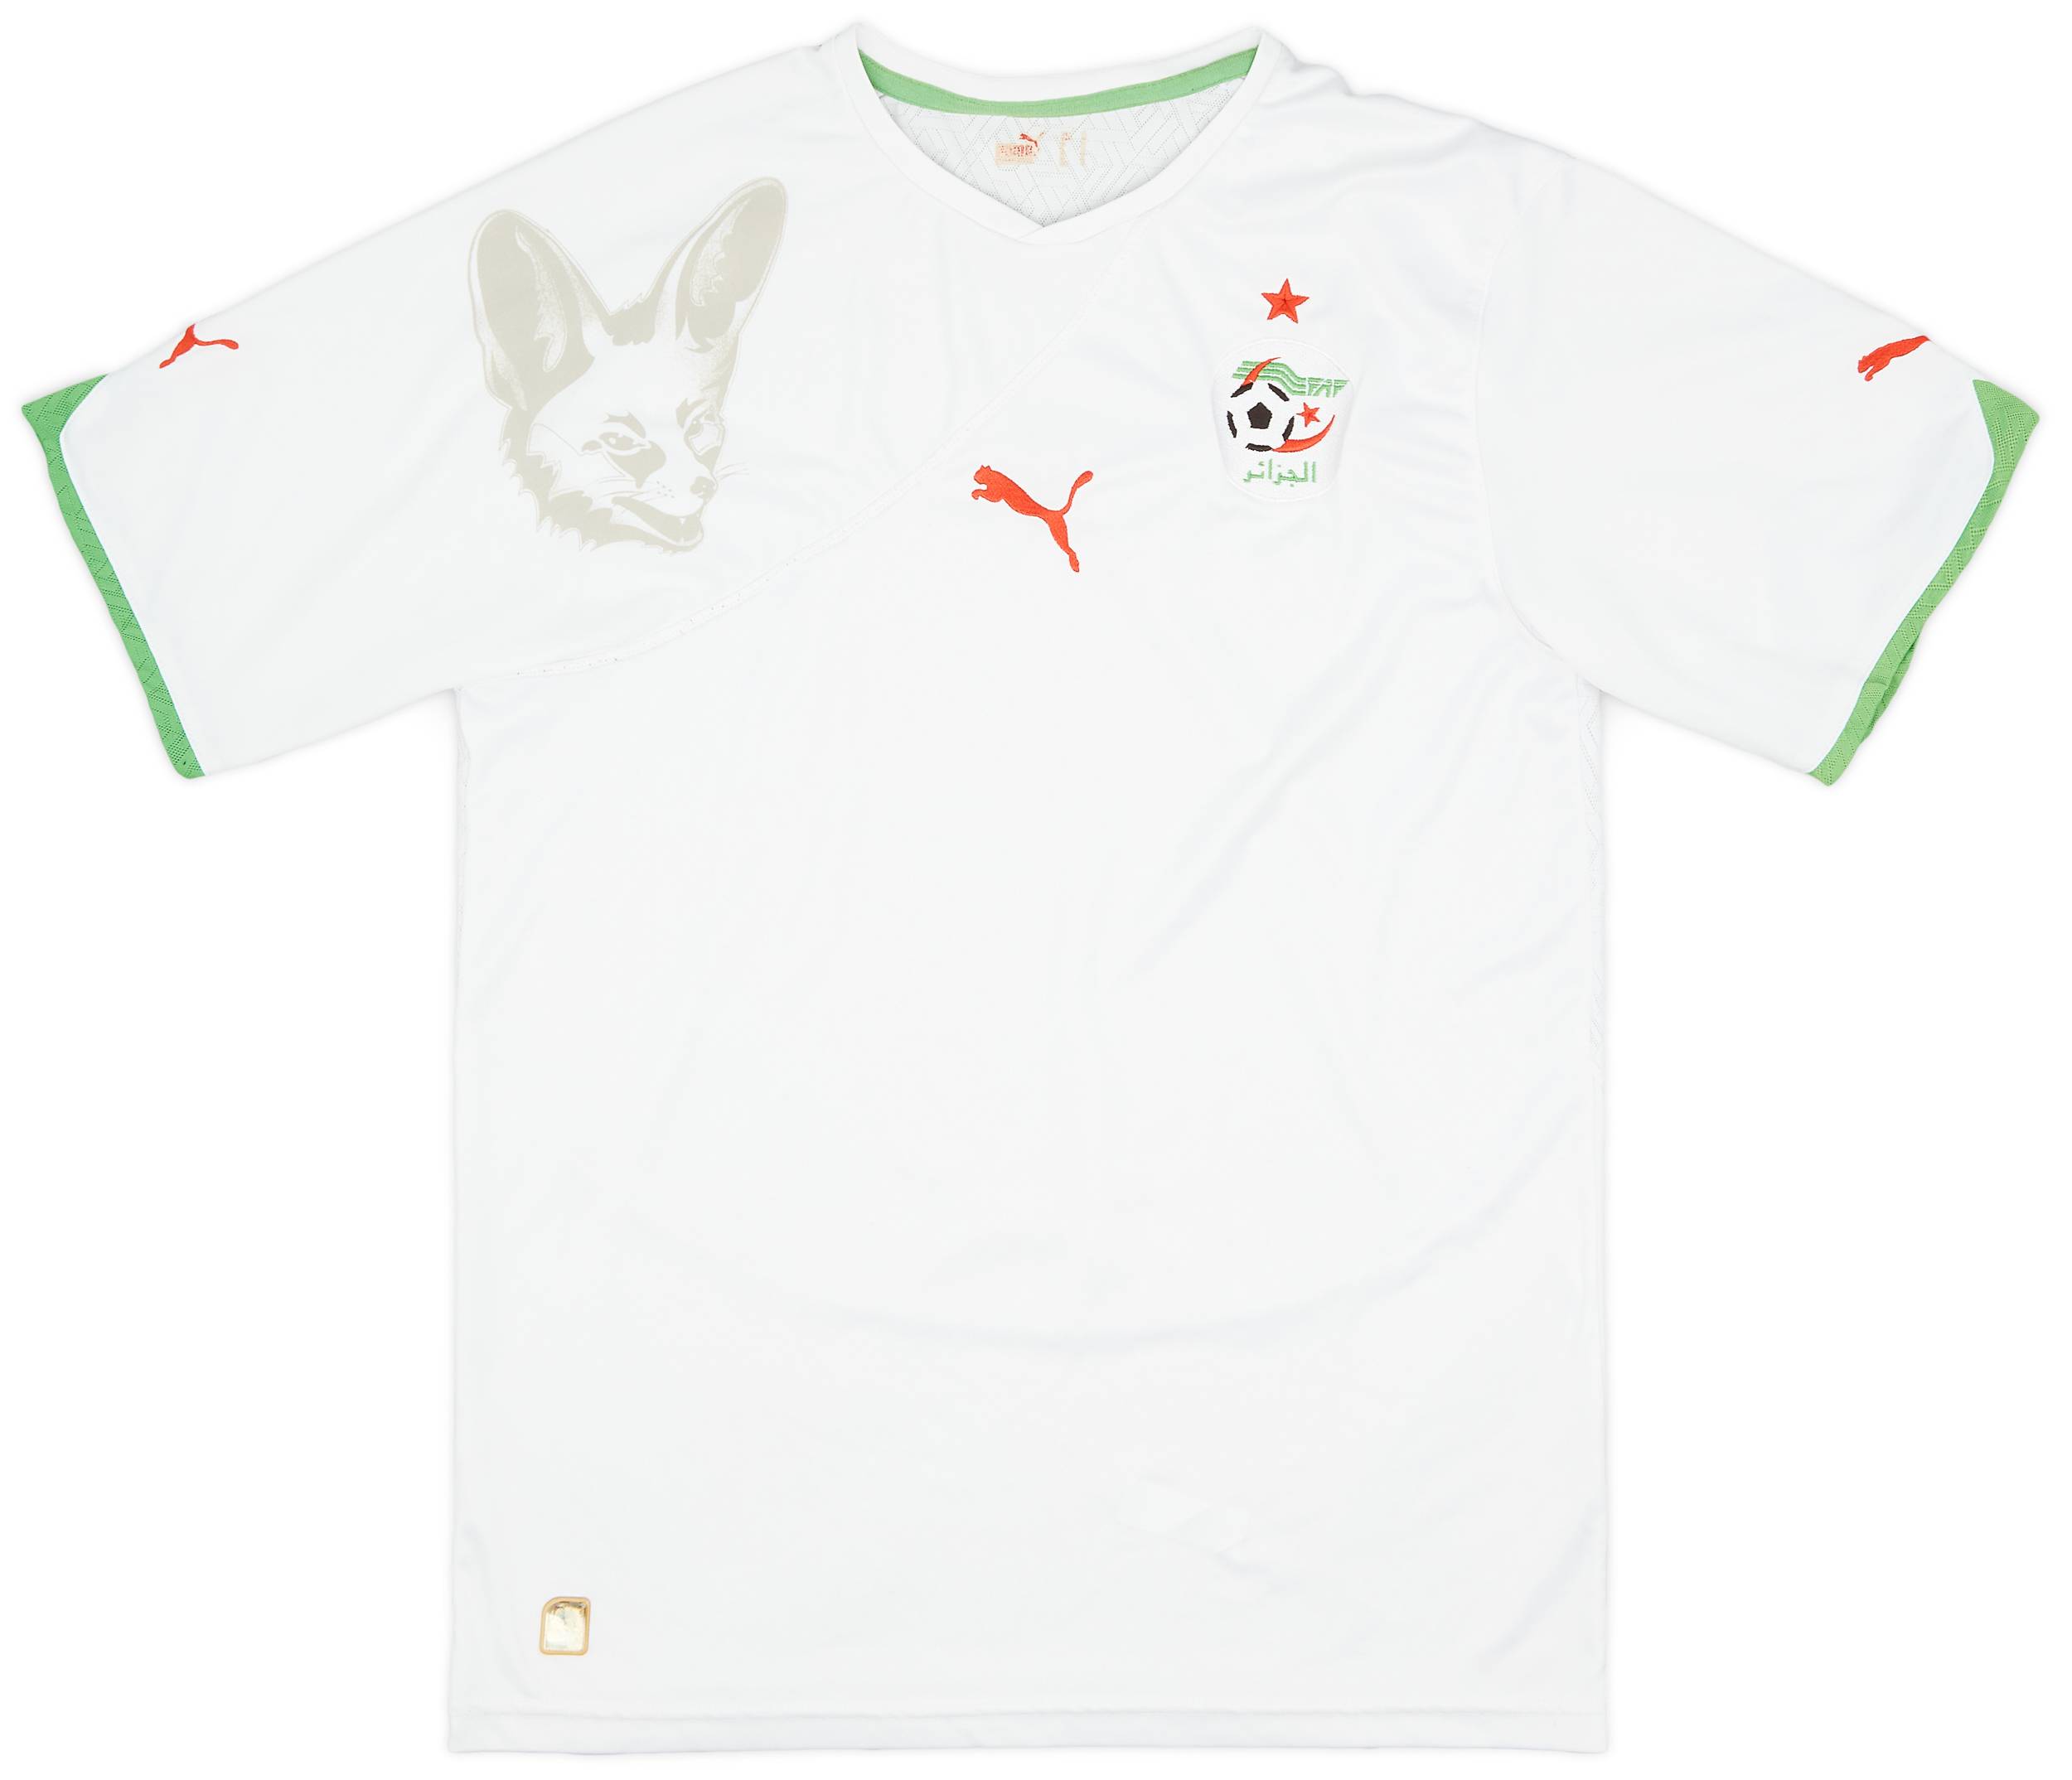 2010-11 Algeria Home Shirt - 9/10 - (L)